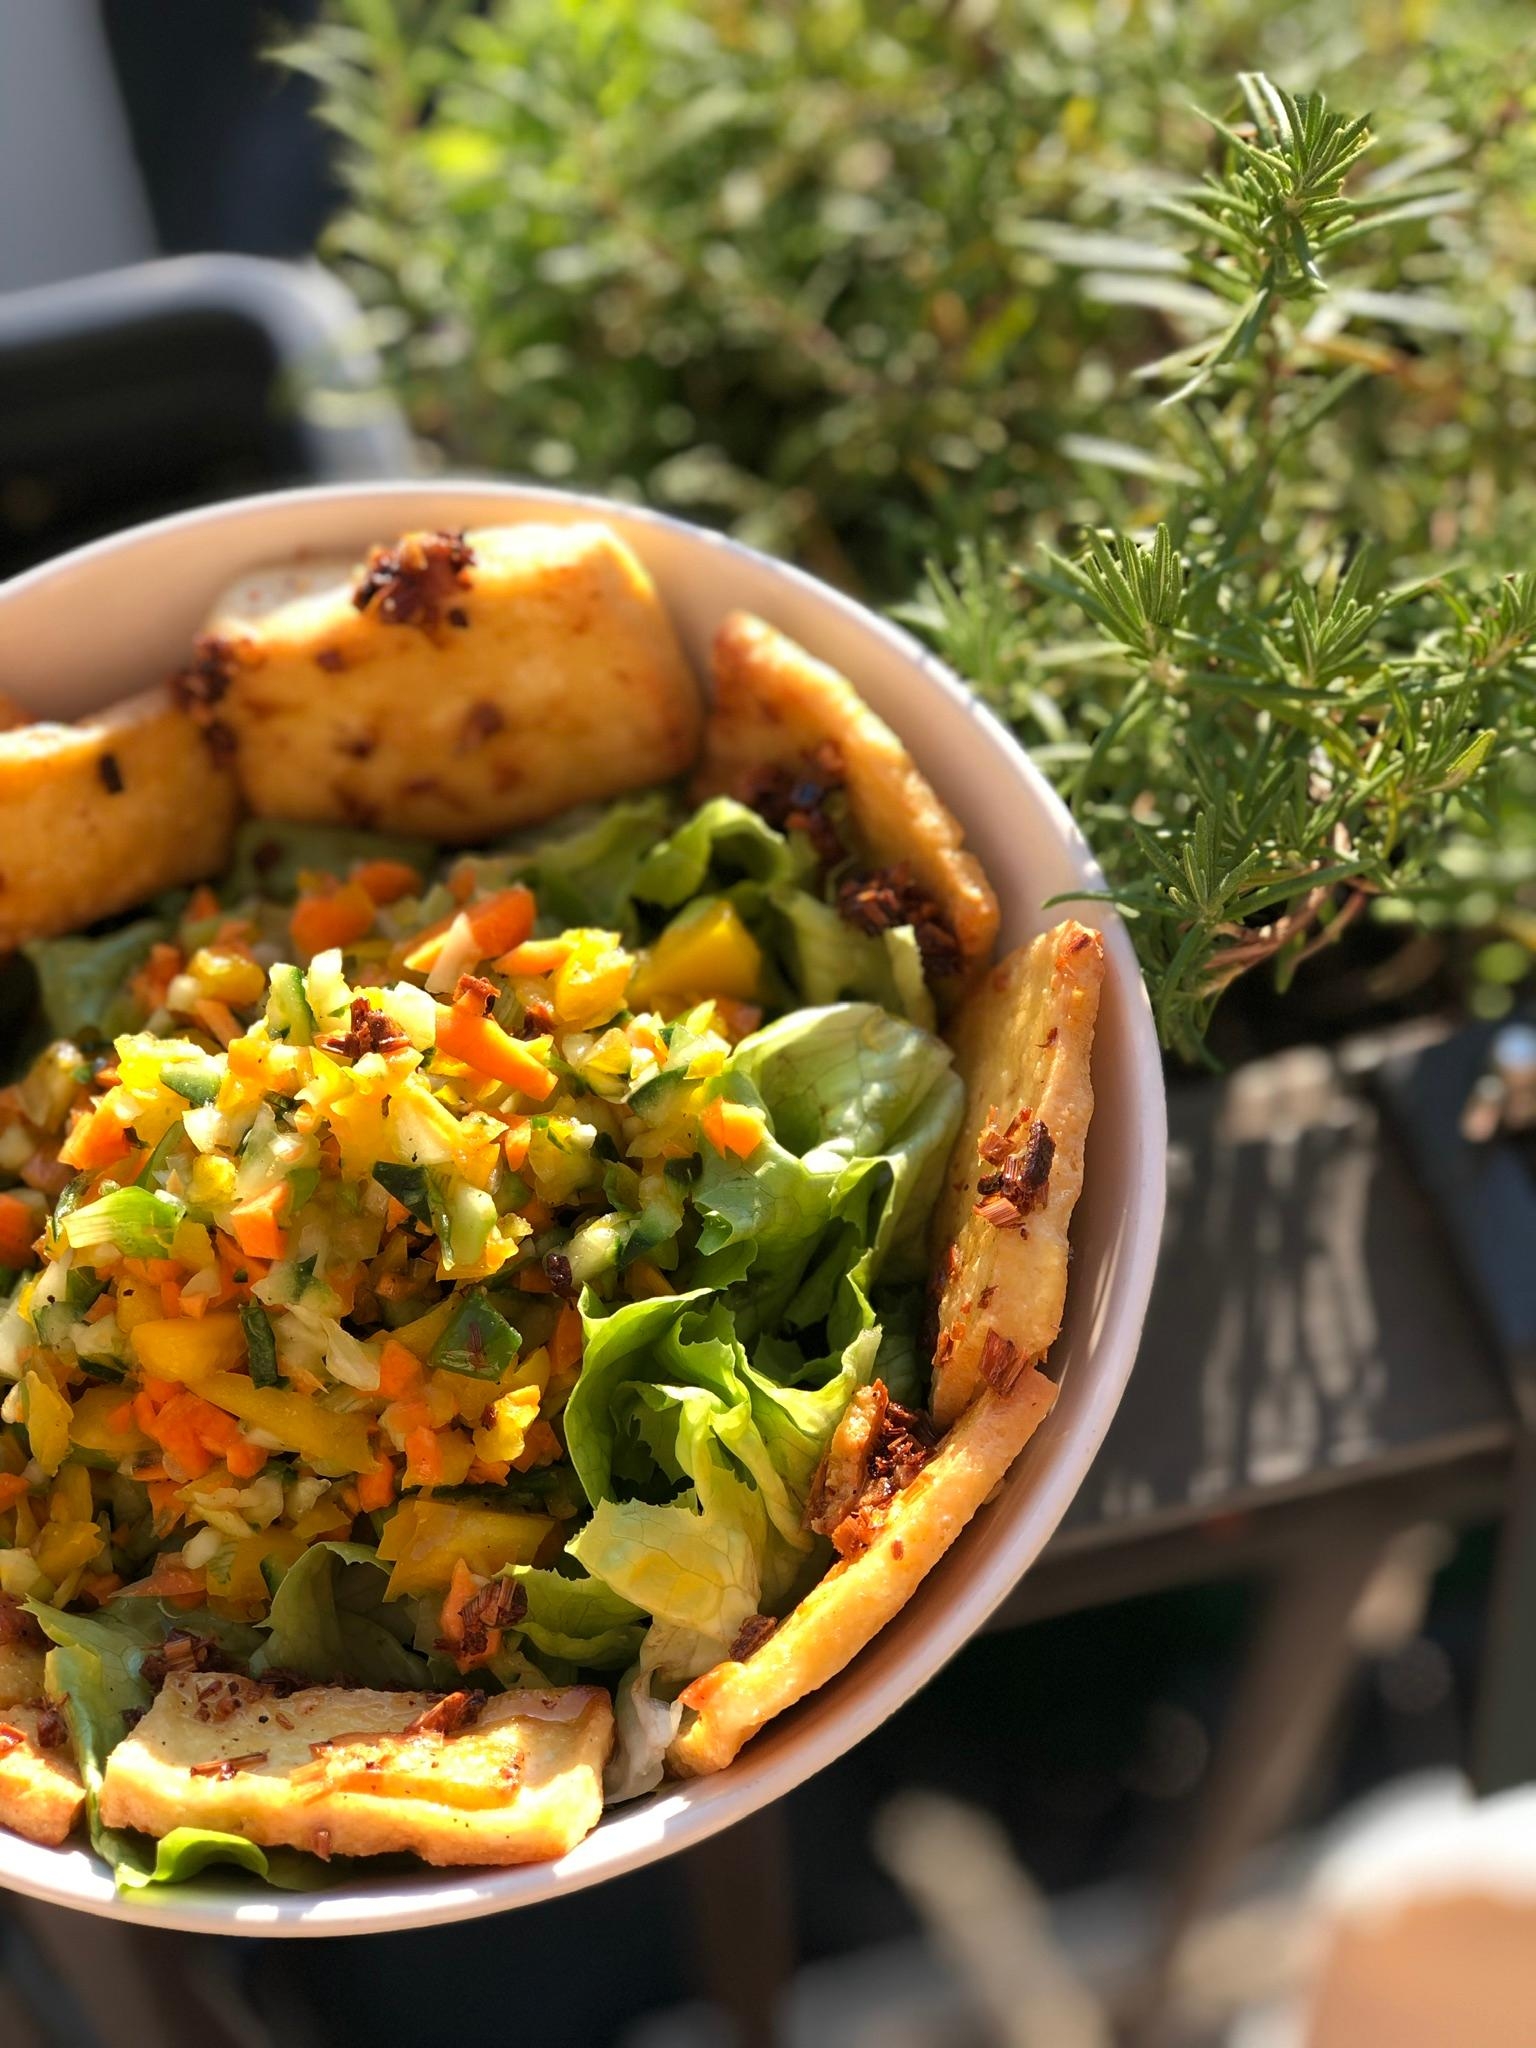 #veggieliebe
Zitronengras Tofu mit Salat und Gemüse